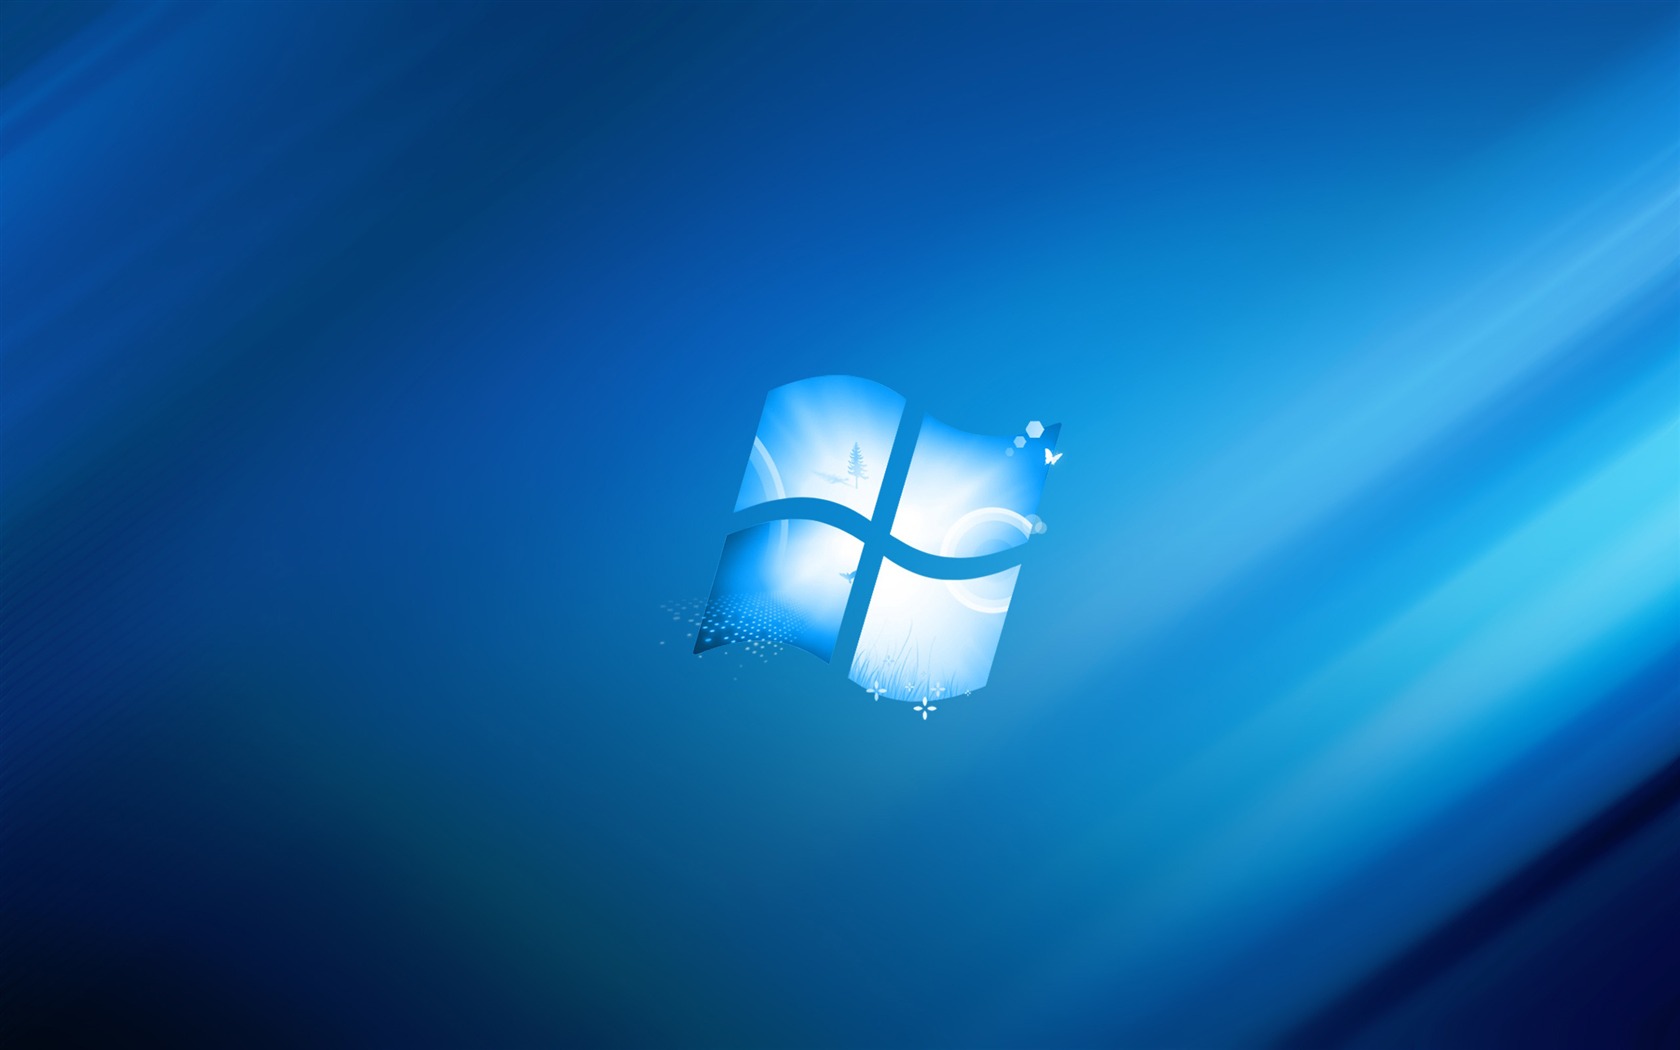 Windows 10 Wallpapers Free HD Download 500 HQ  Unsplash